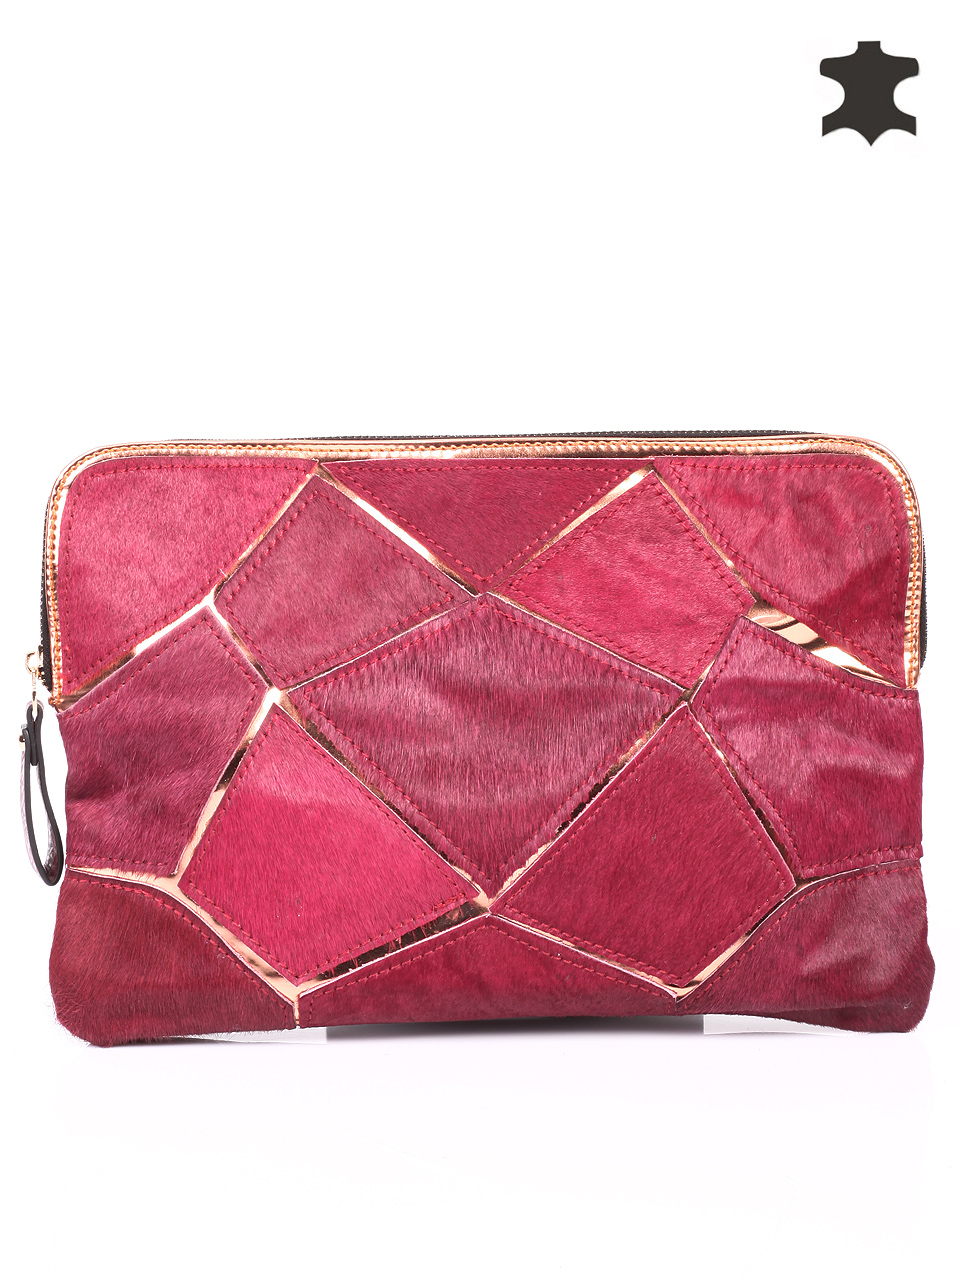 Marsala Clutch. Marsala Purse. Marsala Handbag. Genuine Leather Clutch. Marsala Leather Clutch. Red Handbag. Red Clutch. Red Purse.